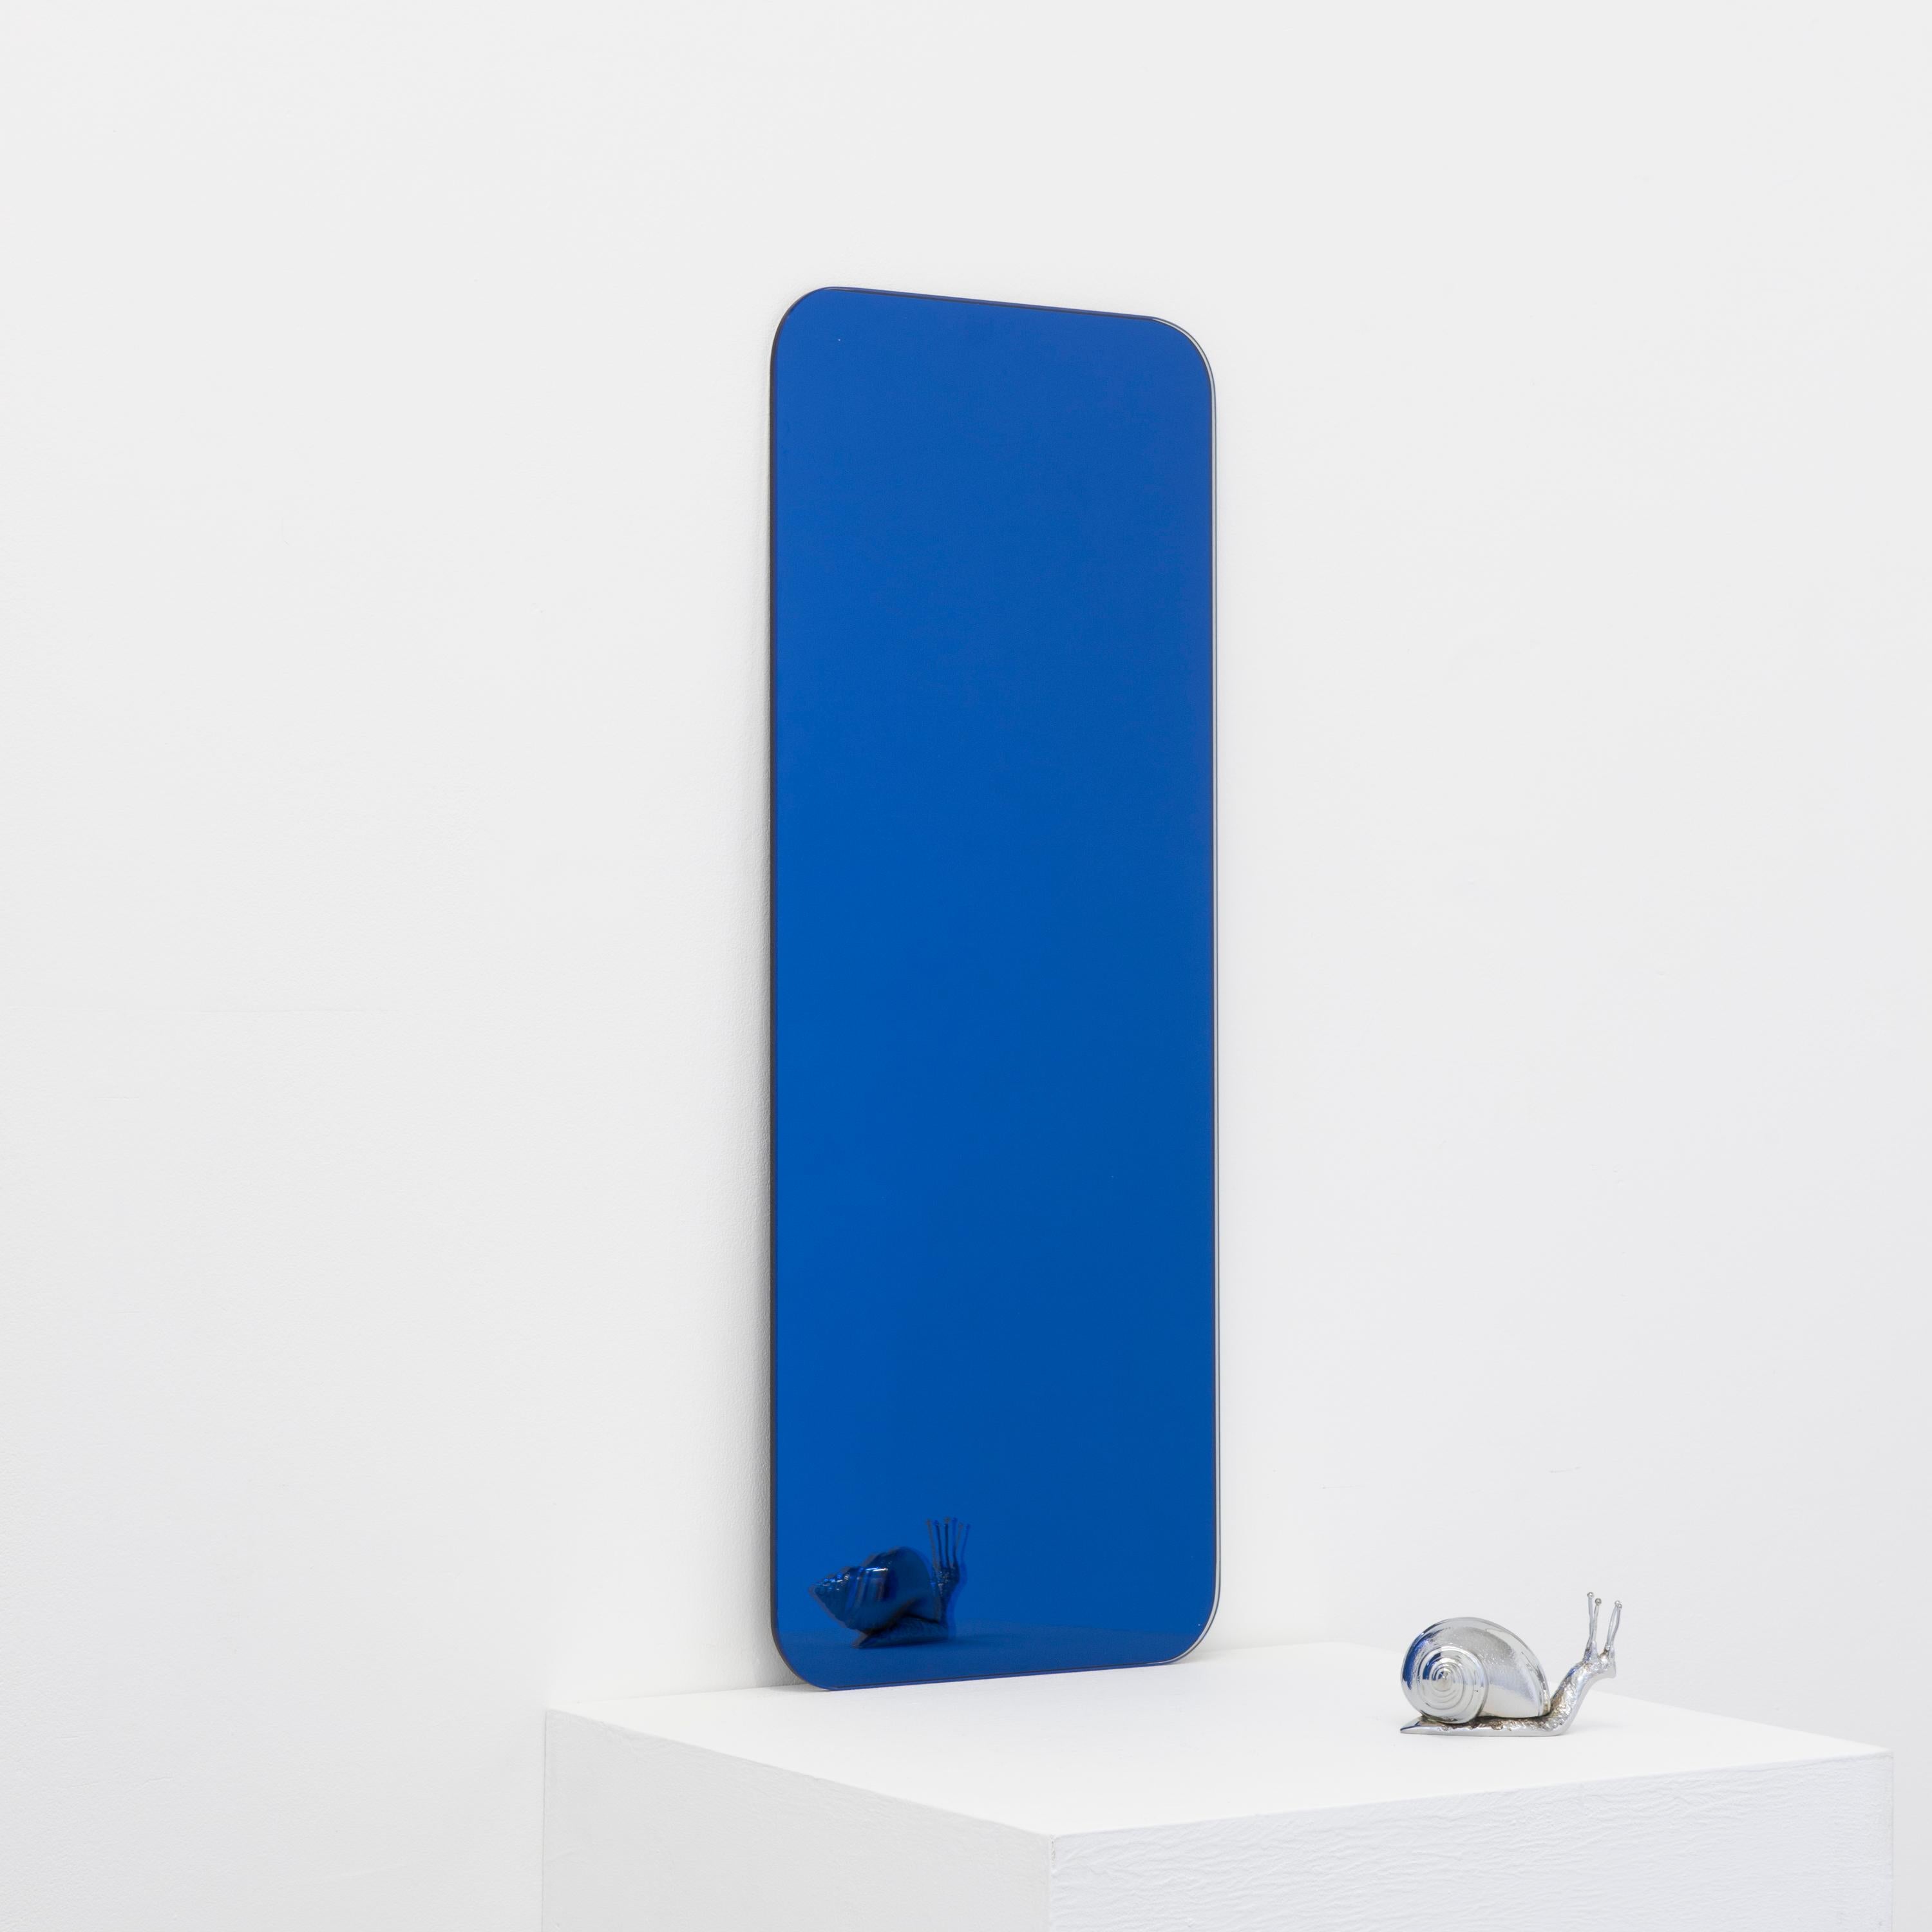 Miroir rectangulaire minimaliste sans cadre, teinté de bleu, à effet flottant. Un design de qualité qui garantit que le miroir est parfaitement parallèle au mur. Conçu et fabriqué à Londres, au Royaume-Uni.

Equipé de plaques professionnelles non